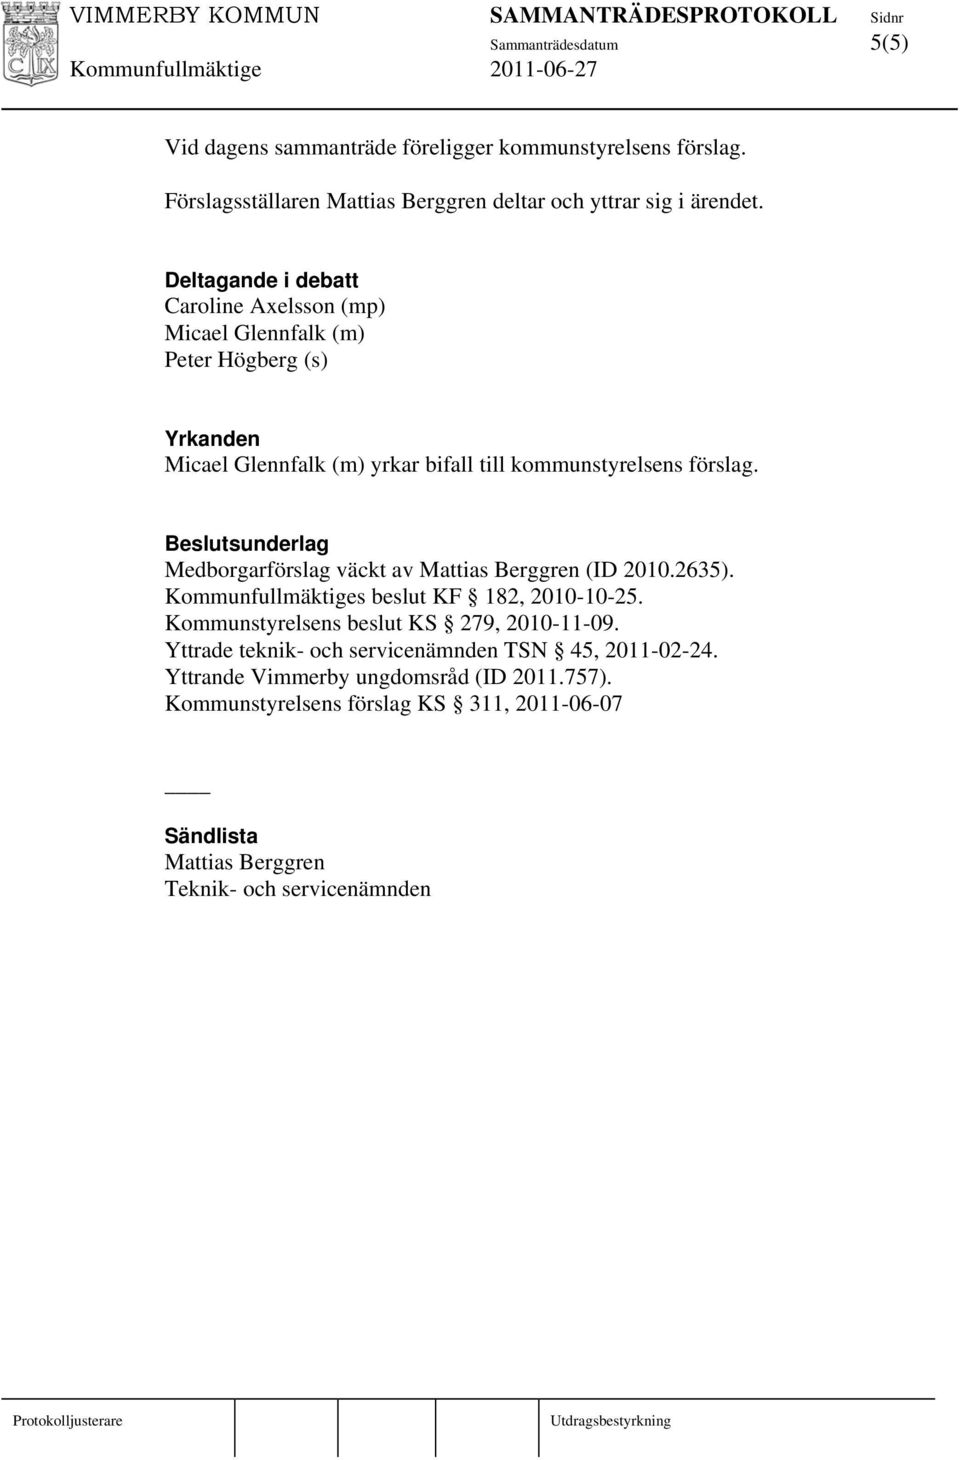 Beslutsunderlag Medborgarförslag väckt av Mattias Berggren (ID 2010.2635). Kommunfullmäktiges beslut KF 182, 2010-10-25. Kommunstyrelsens beslut KS 279, 2010-11-09.